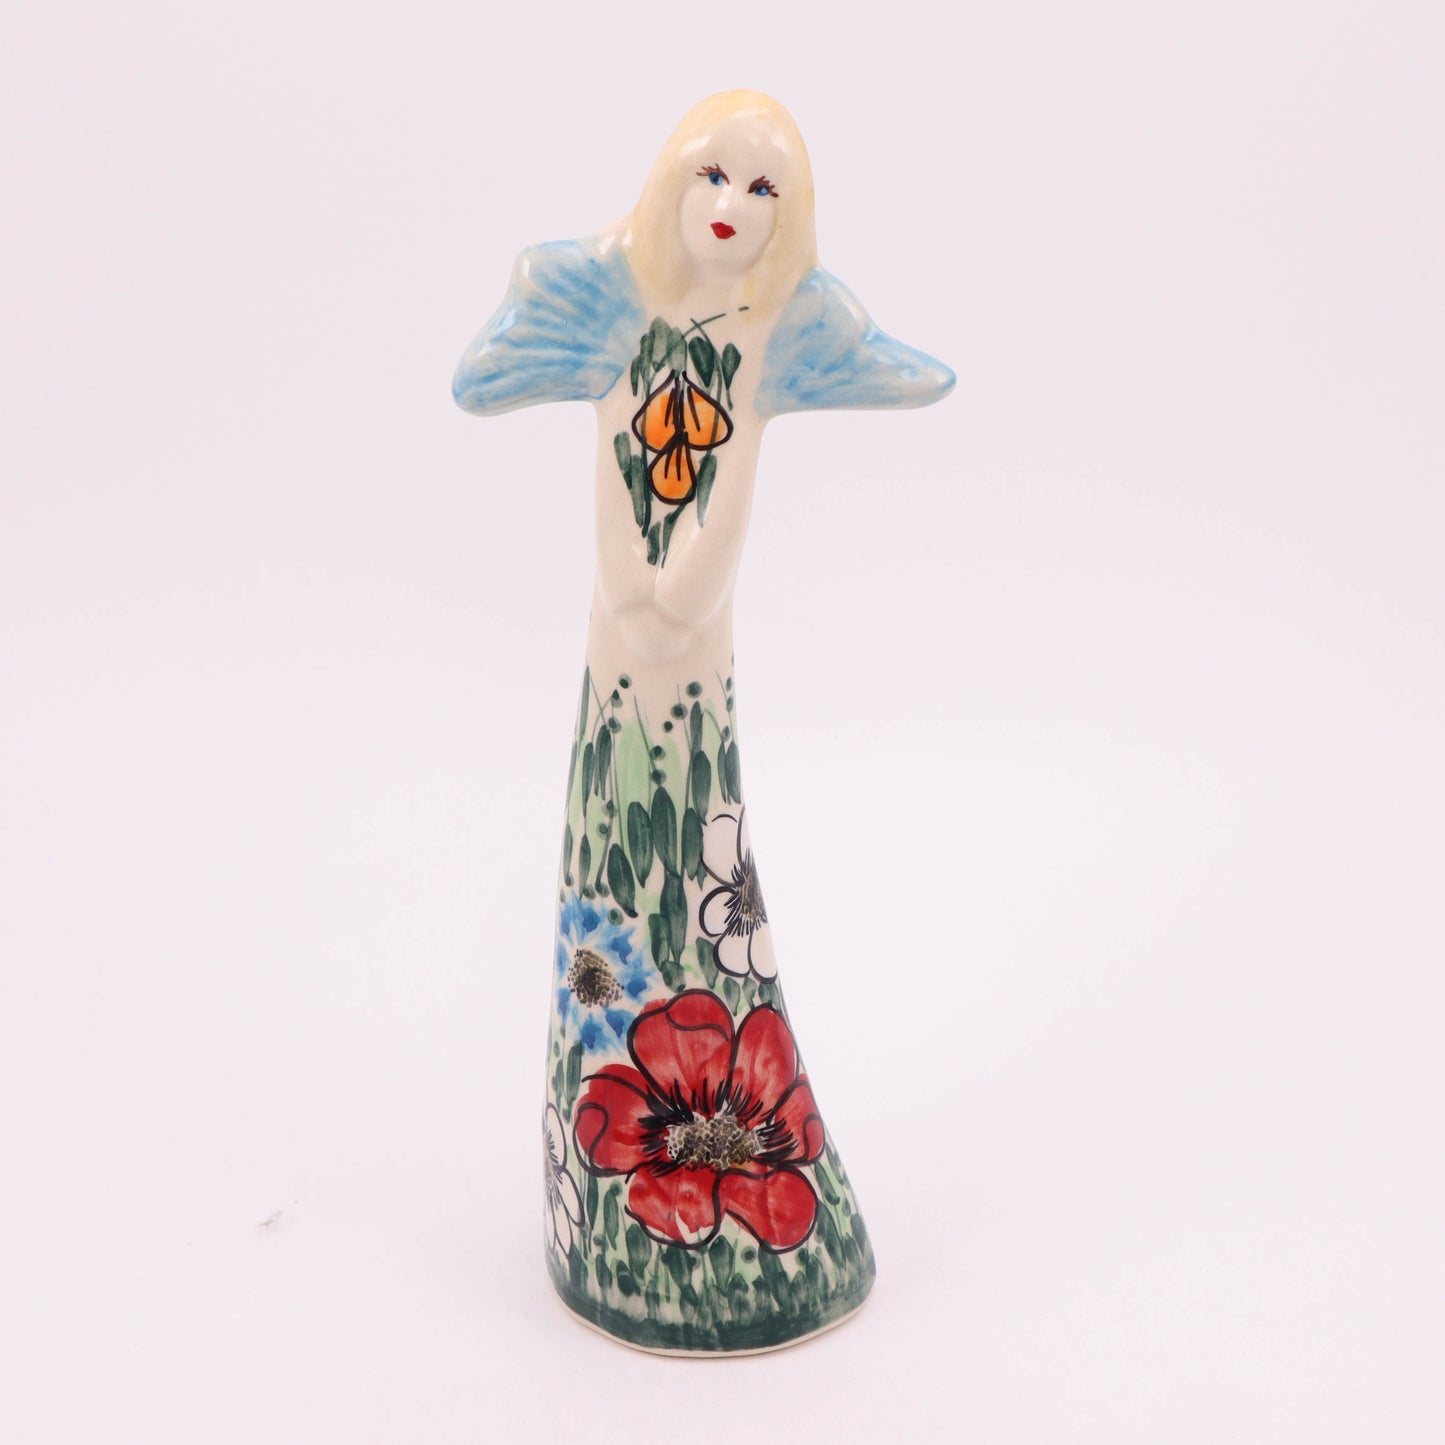 10" Angel Figurine. Pattern: Meadow